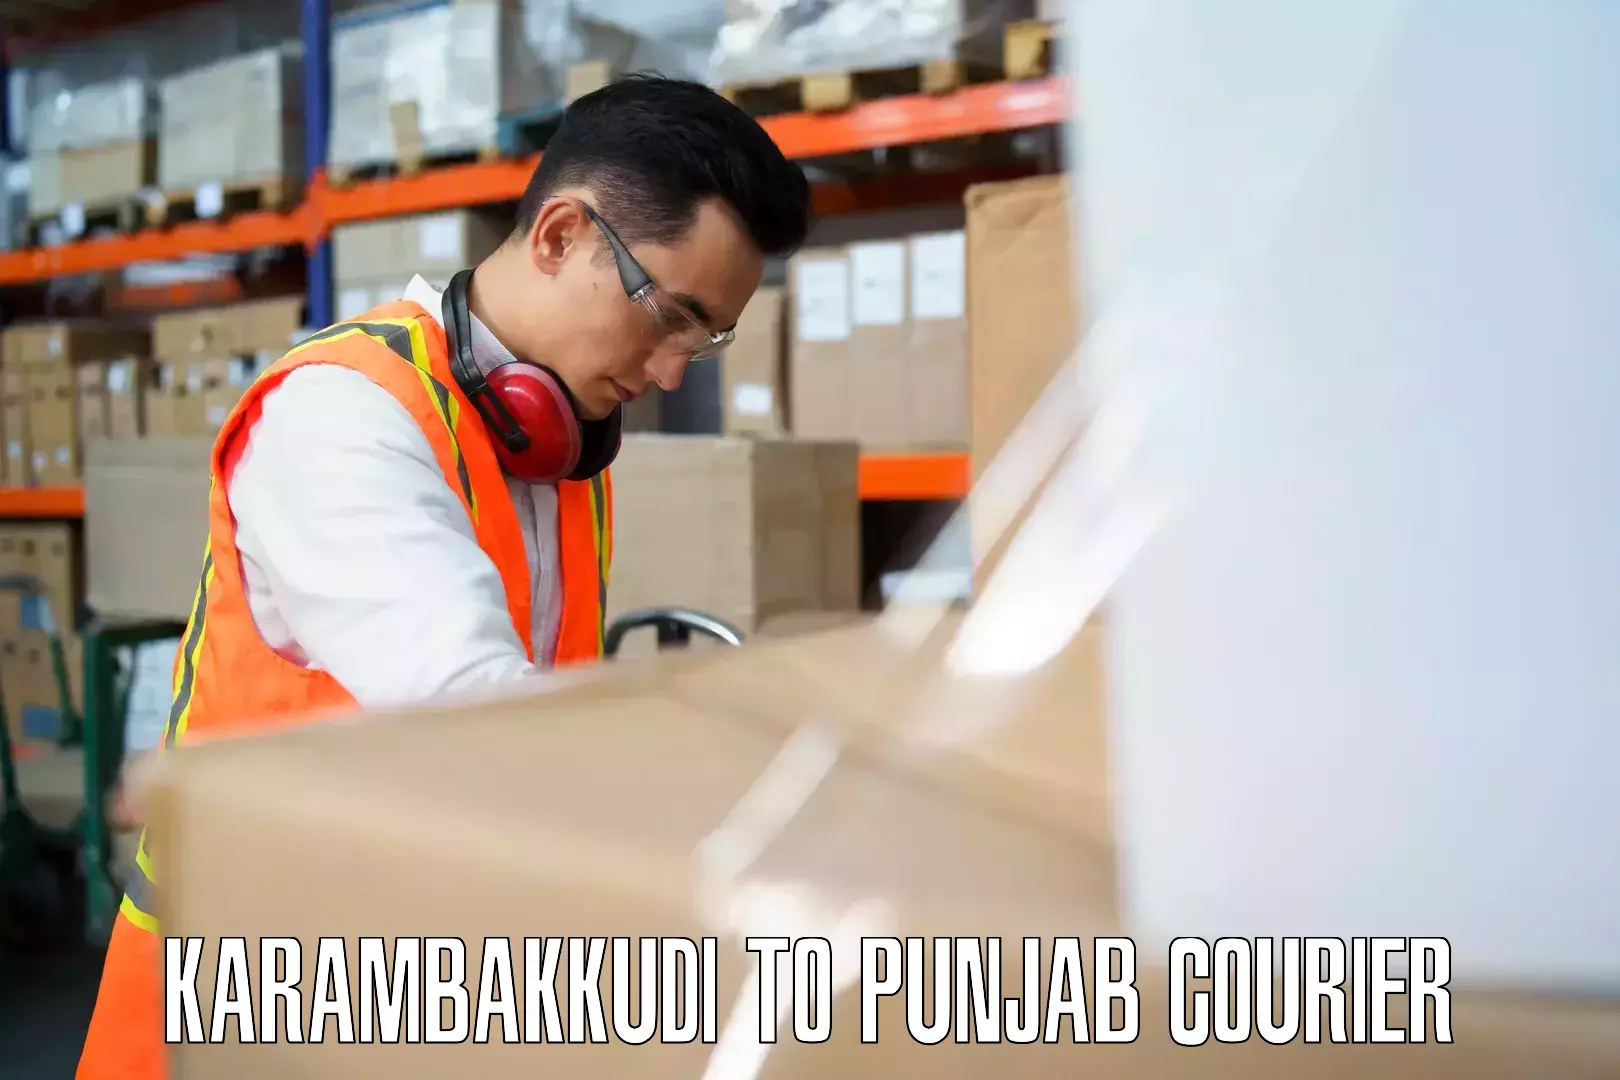 Luggage courier logistics Karambakkudi to Central University of Punjab Bathinda